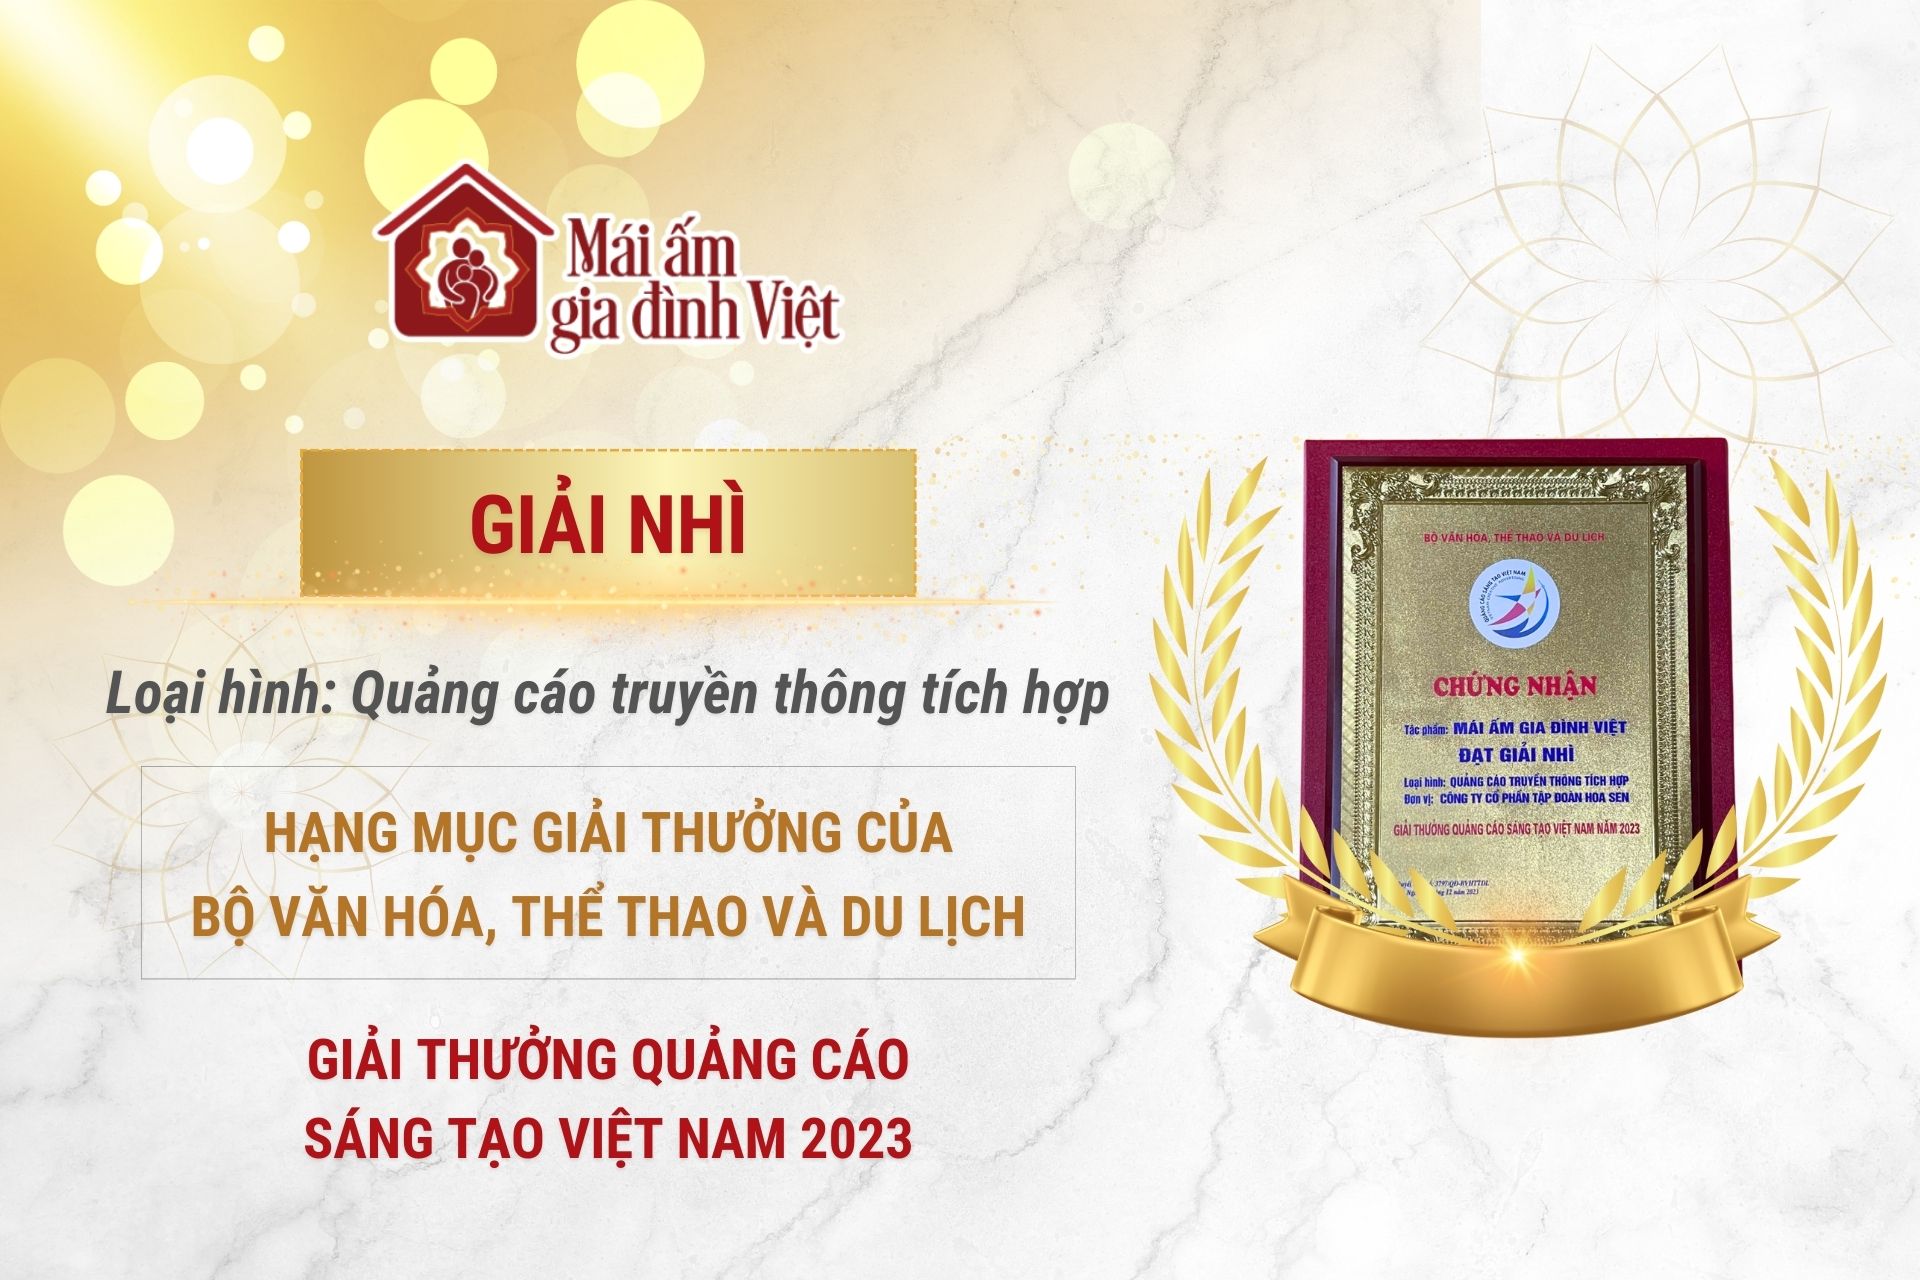 'Mái ấm gia đình Việt' đạt Giải Nhì tại Lễ trao Giải Quảng cáo sáng tạo Việt Nam năm 2023 - Hạng mục Giải thưởng của Bộ Văn hóa, Thể thao và Du lịch